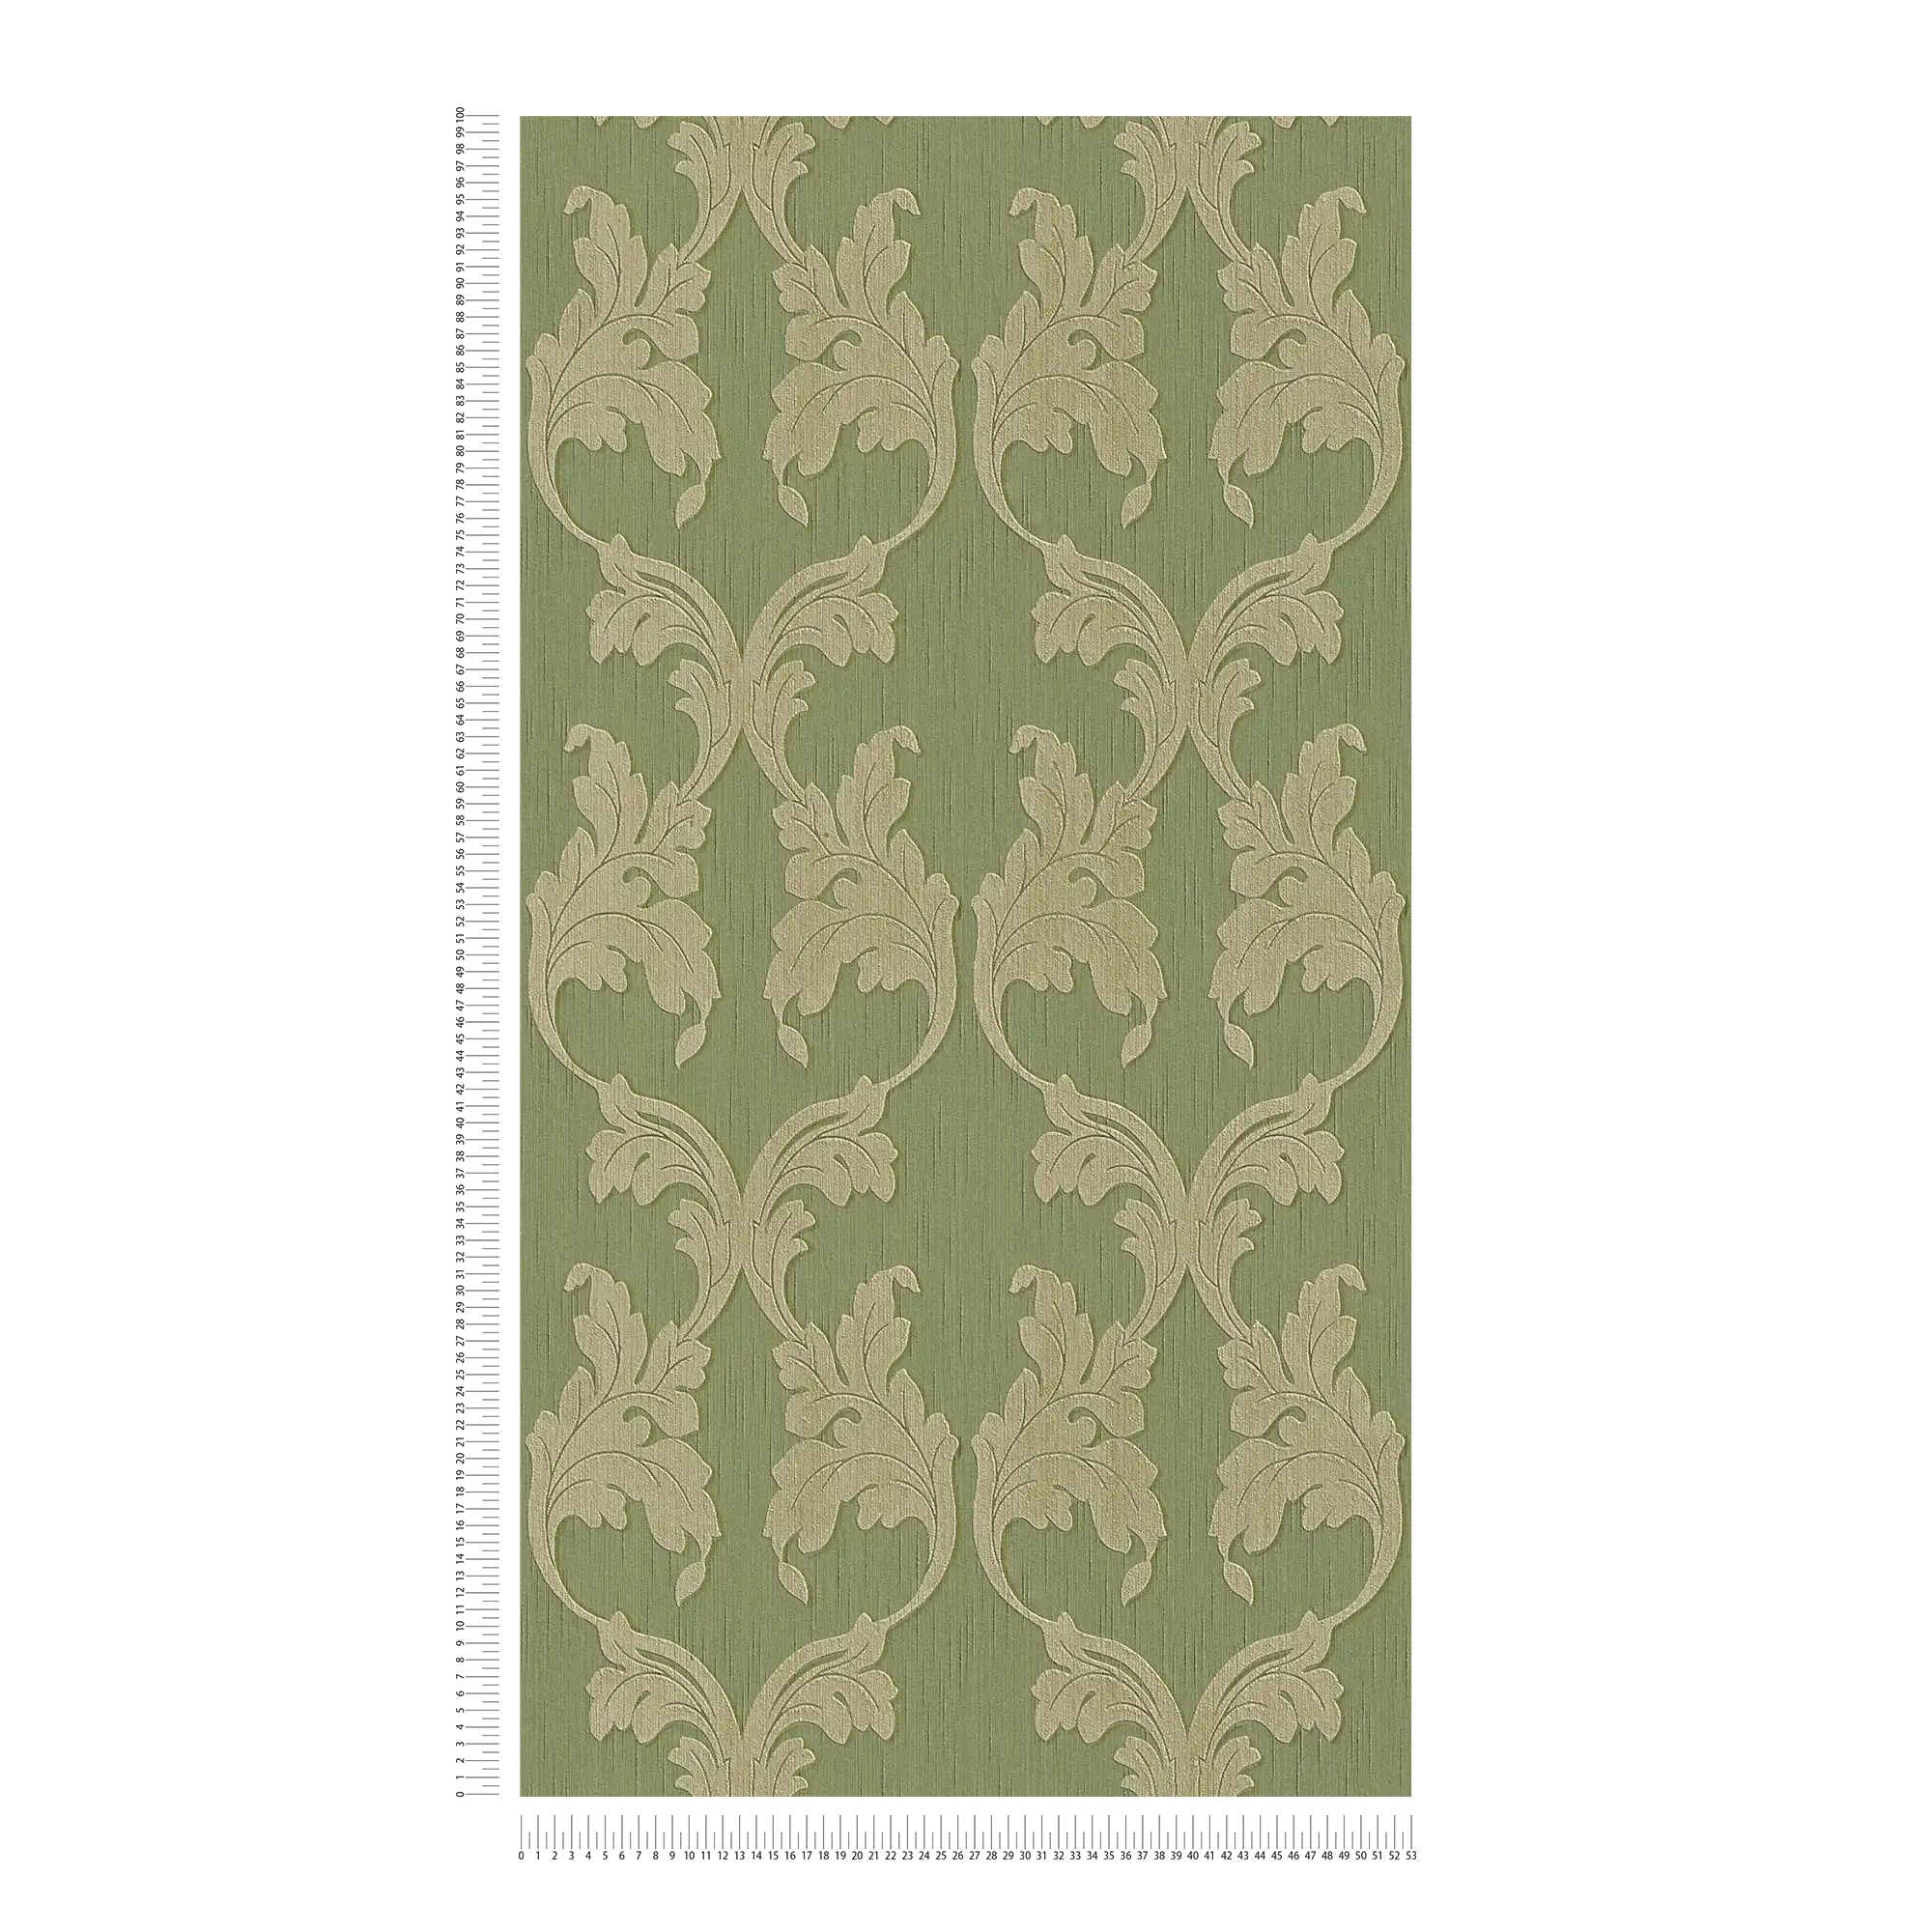             Behang met sierranken & structuurpatroon - groen
        